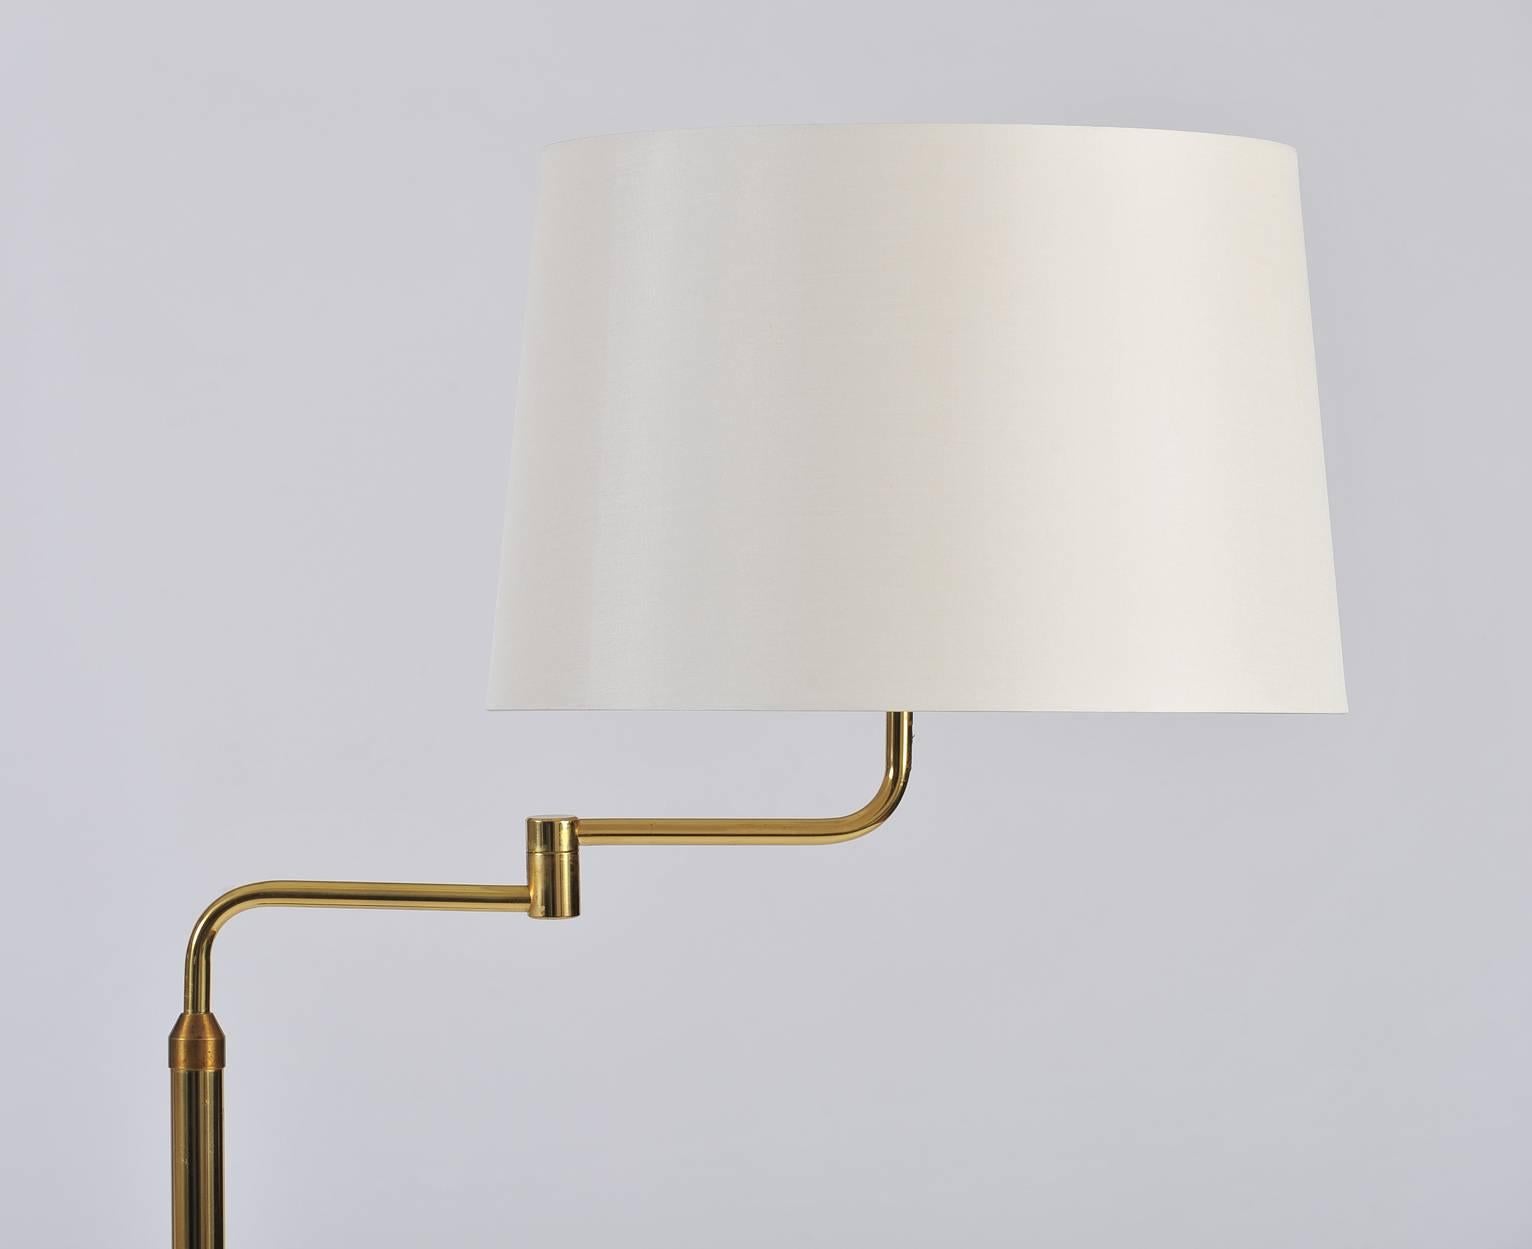 Midcentury Brass Reading Floor Lamp, by Arnesen & Sønn 1